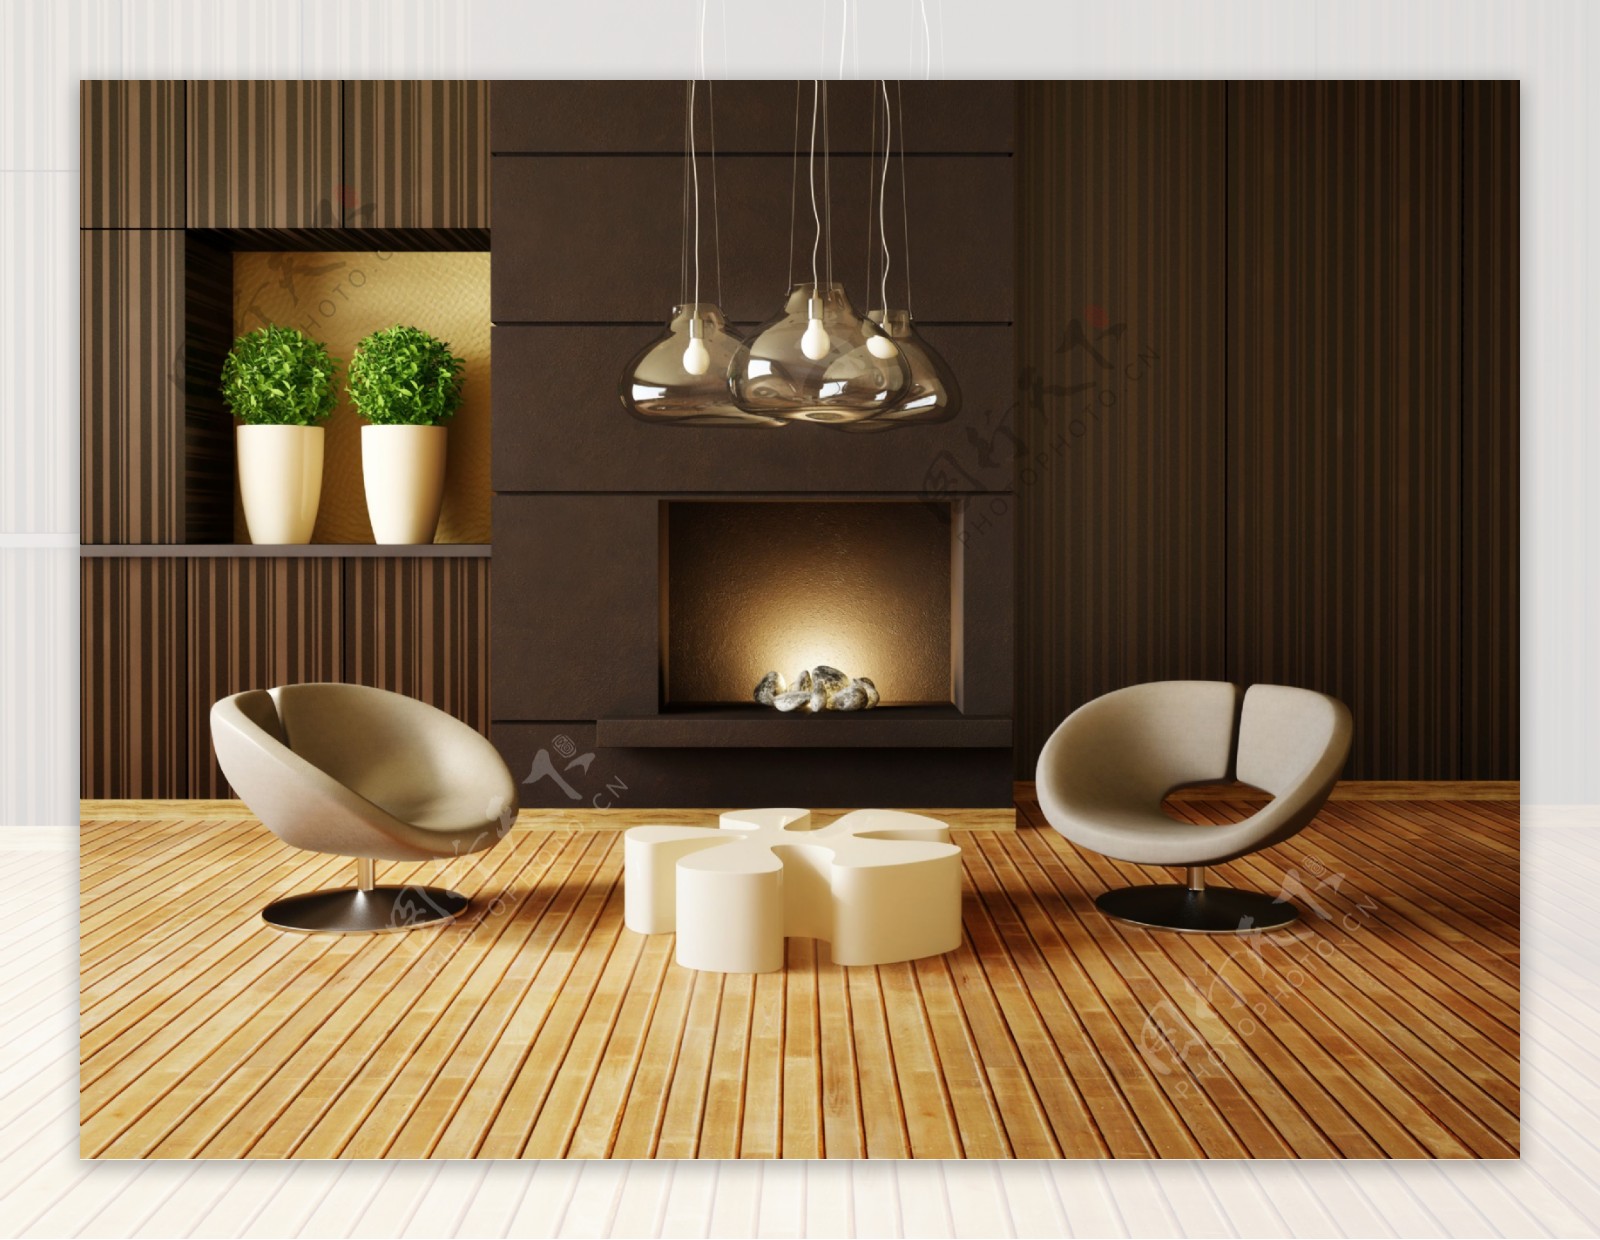 简约时尚客厅壁炉图片 – 设计本装修效果图